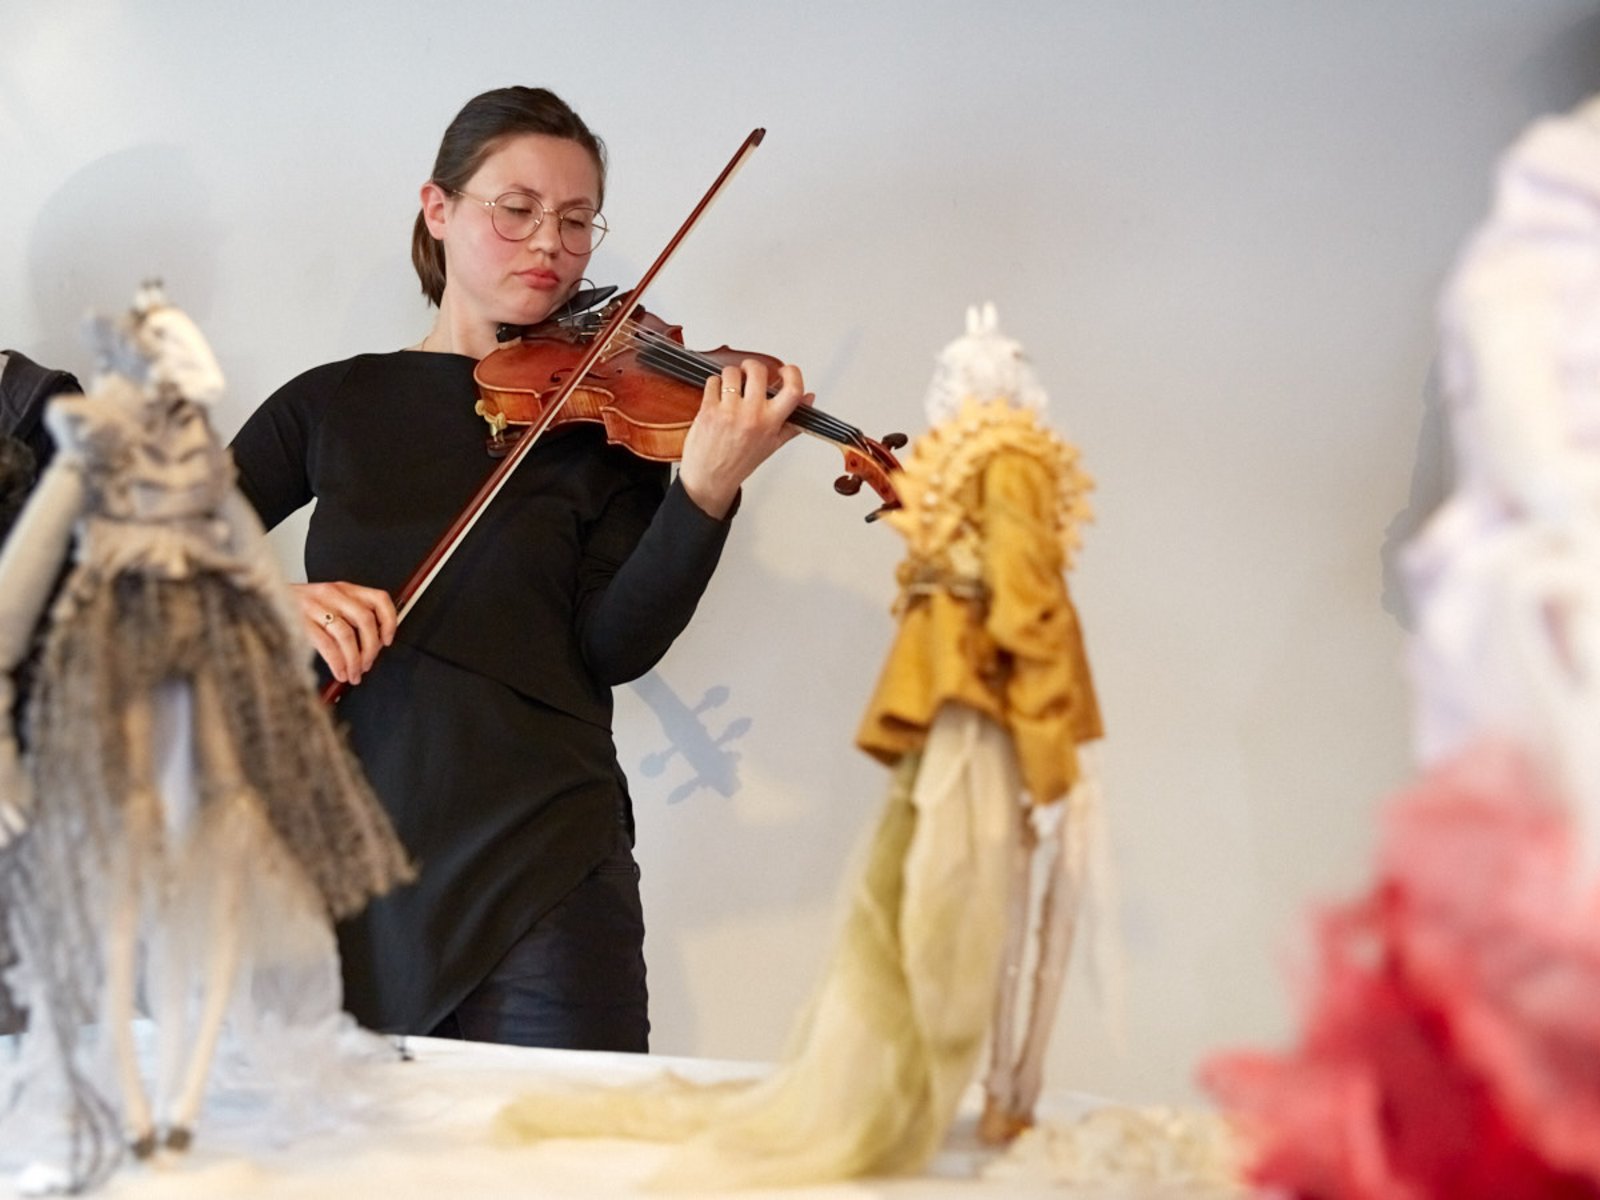 Musikalische Einführung in die Ausstellung zur Vernissage durch Justīne Kulakova Sypniewski; im Vordergrund Puppen von Marija Tavčar, 2019 (Foto: Kaspar Schweizer)